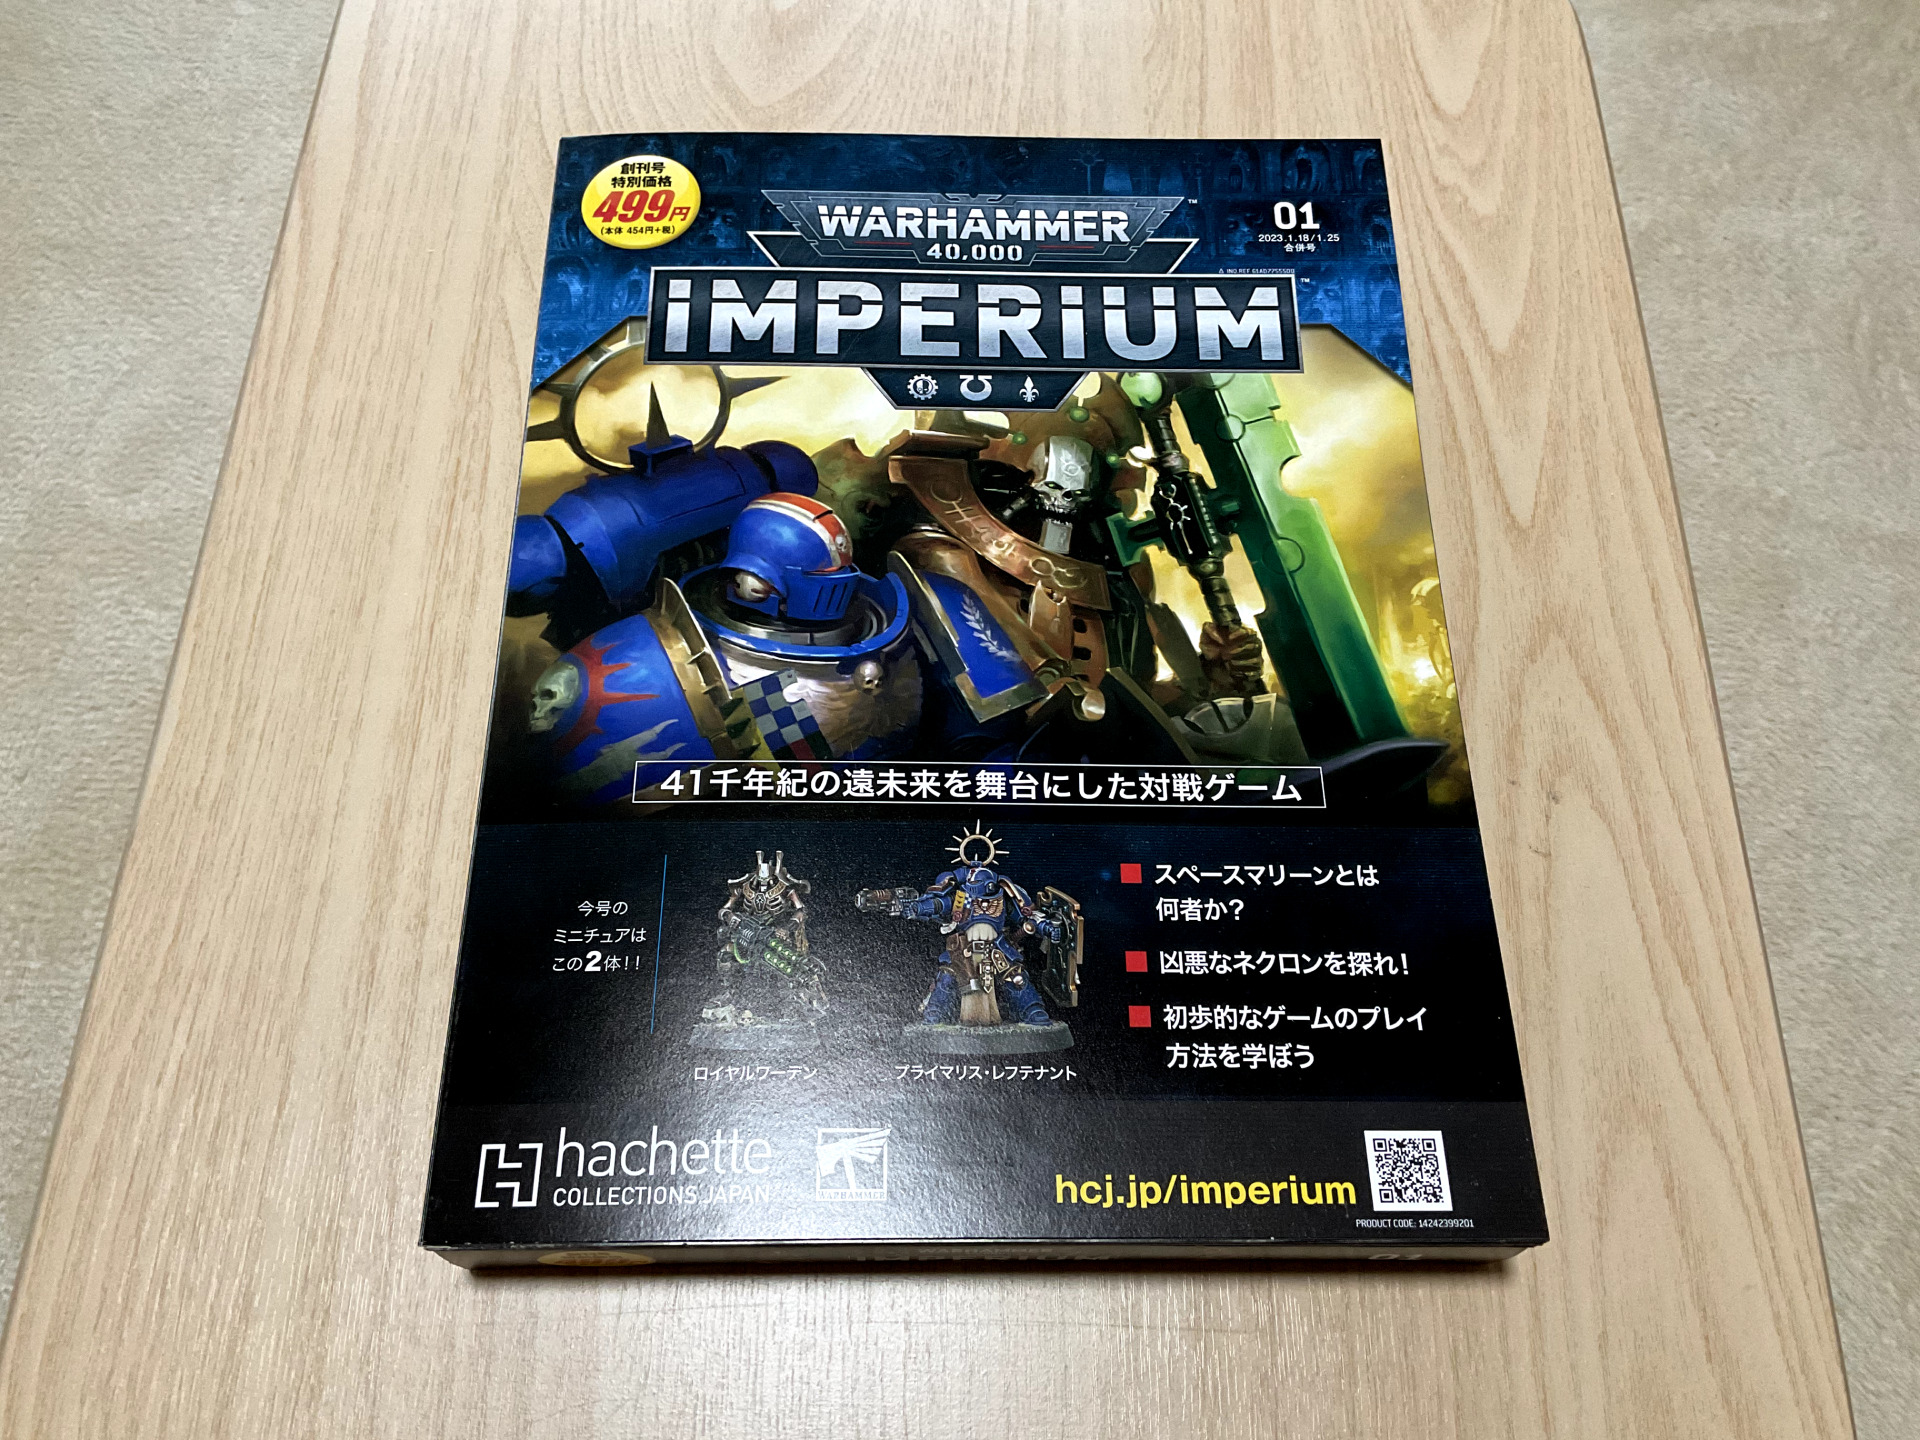 【Warhammer】 週刊Warhammerの創刊号を購入した